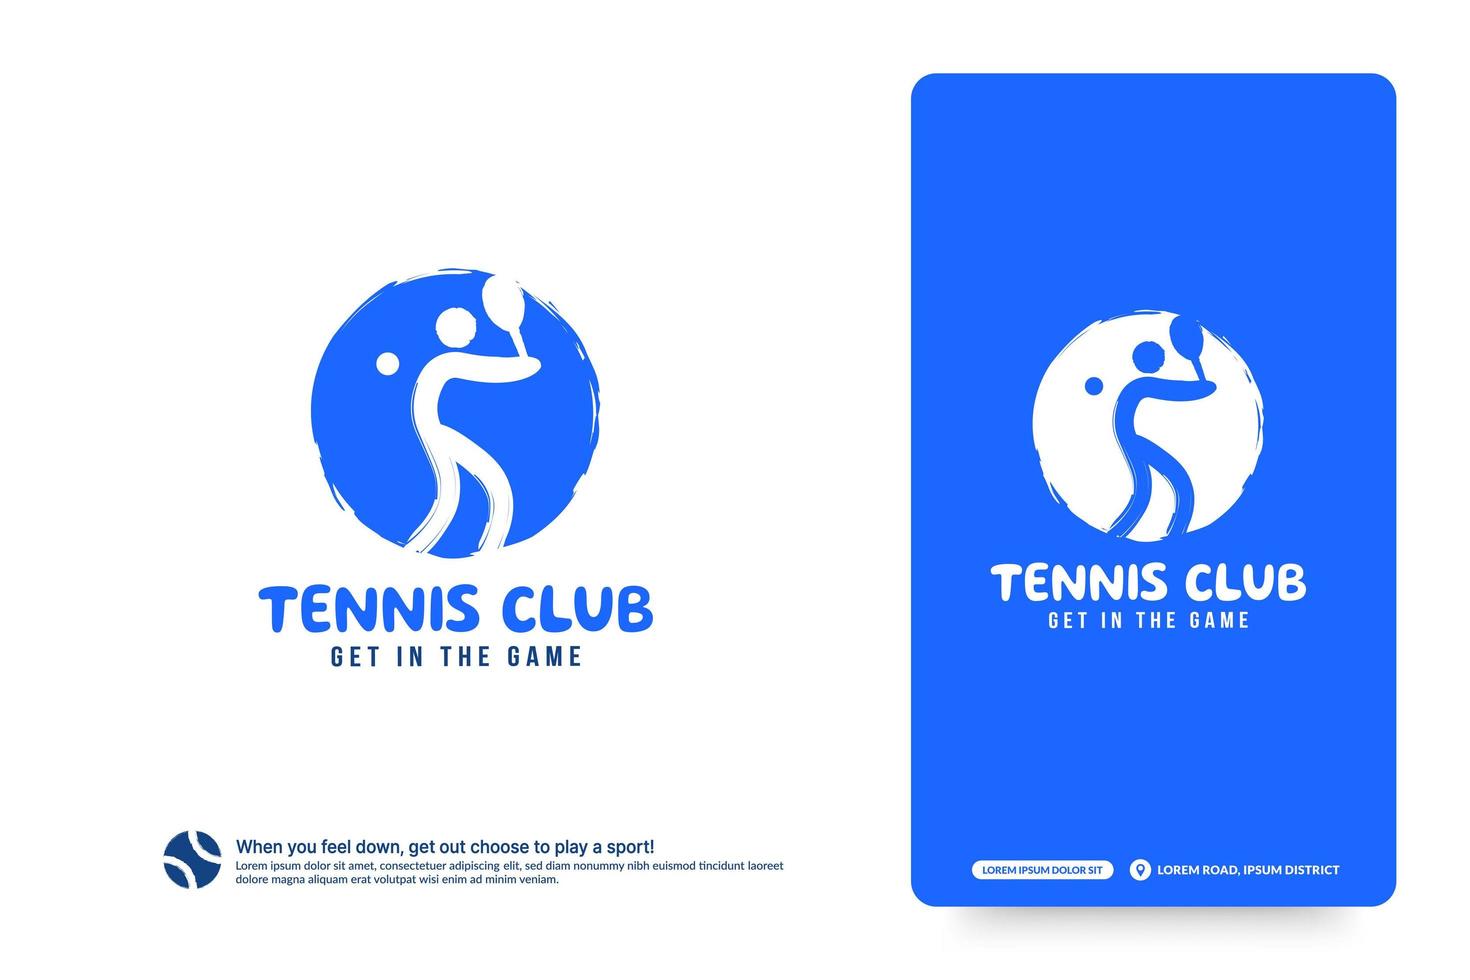 plantilla de diseño de logotipo de club de tenis, concepto de logotipo de torneos de tenis.identidad del equipo de tenis aislado sobre fondo blanco, ilustraciones de vectores de diseño de símbolo de deporte abstracto